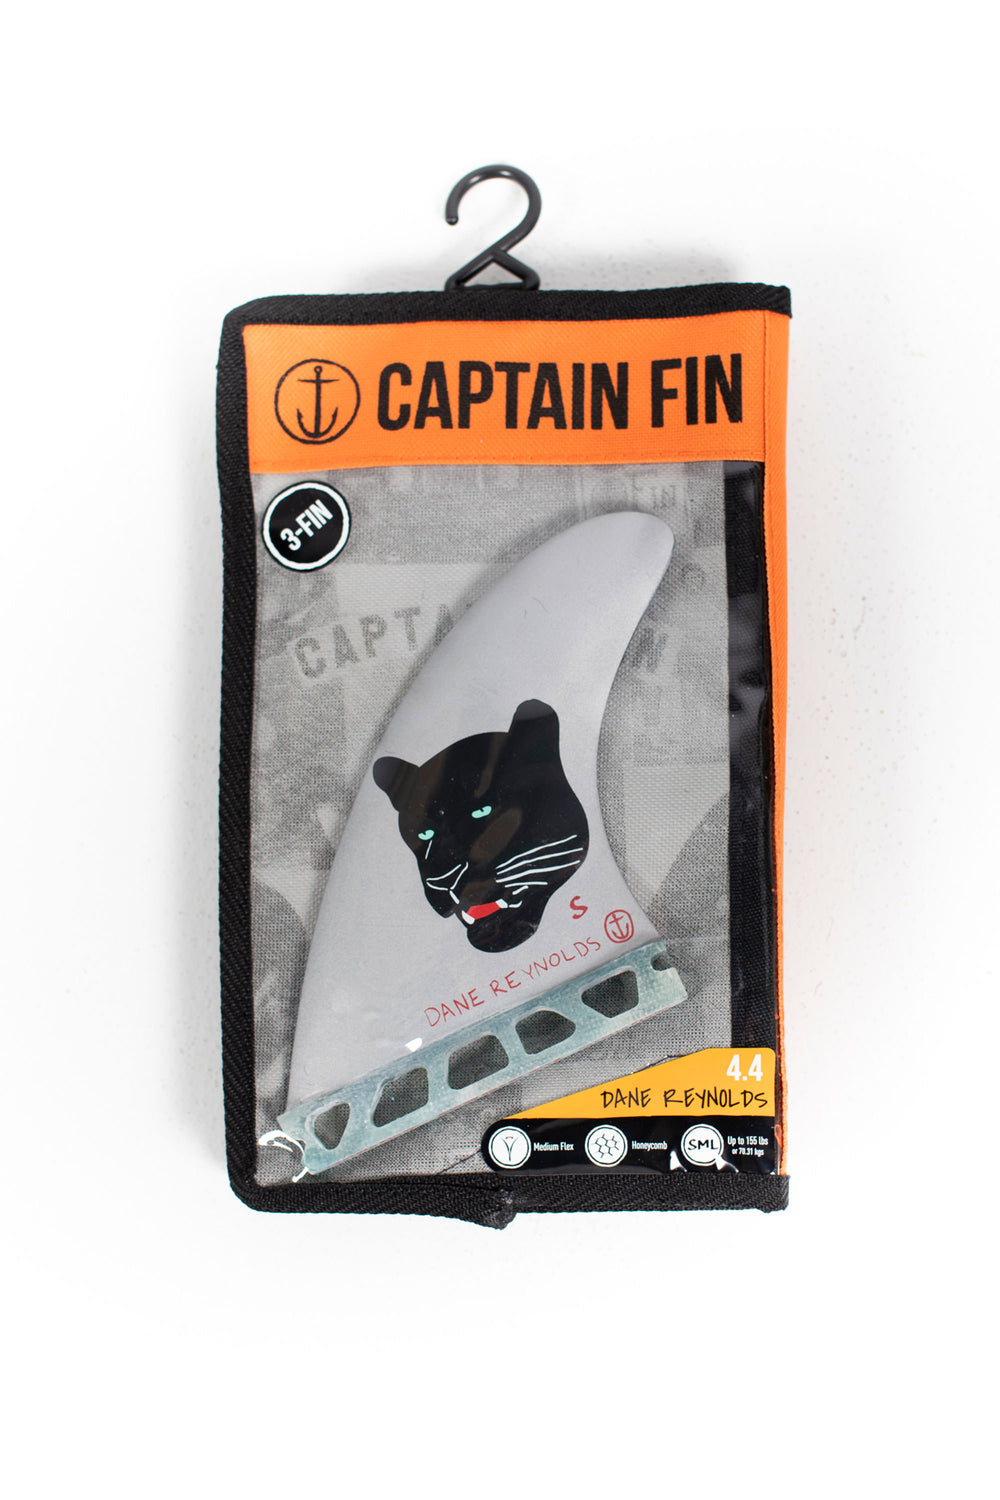 CAPTAIN FIN - Dane Reynolds - S - 3 FINS | Shop at PUKAS SURF SHOP